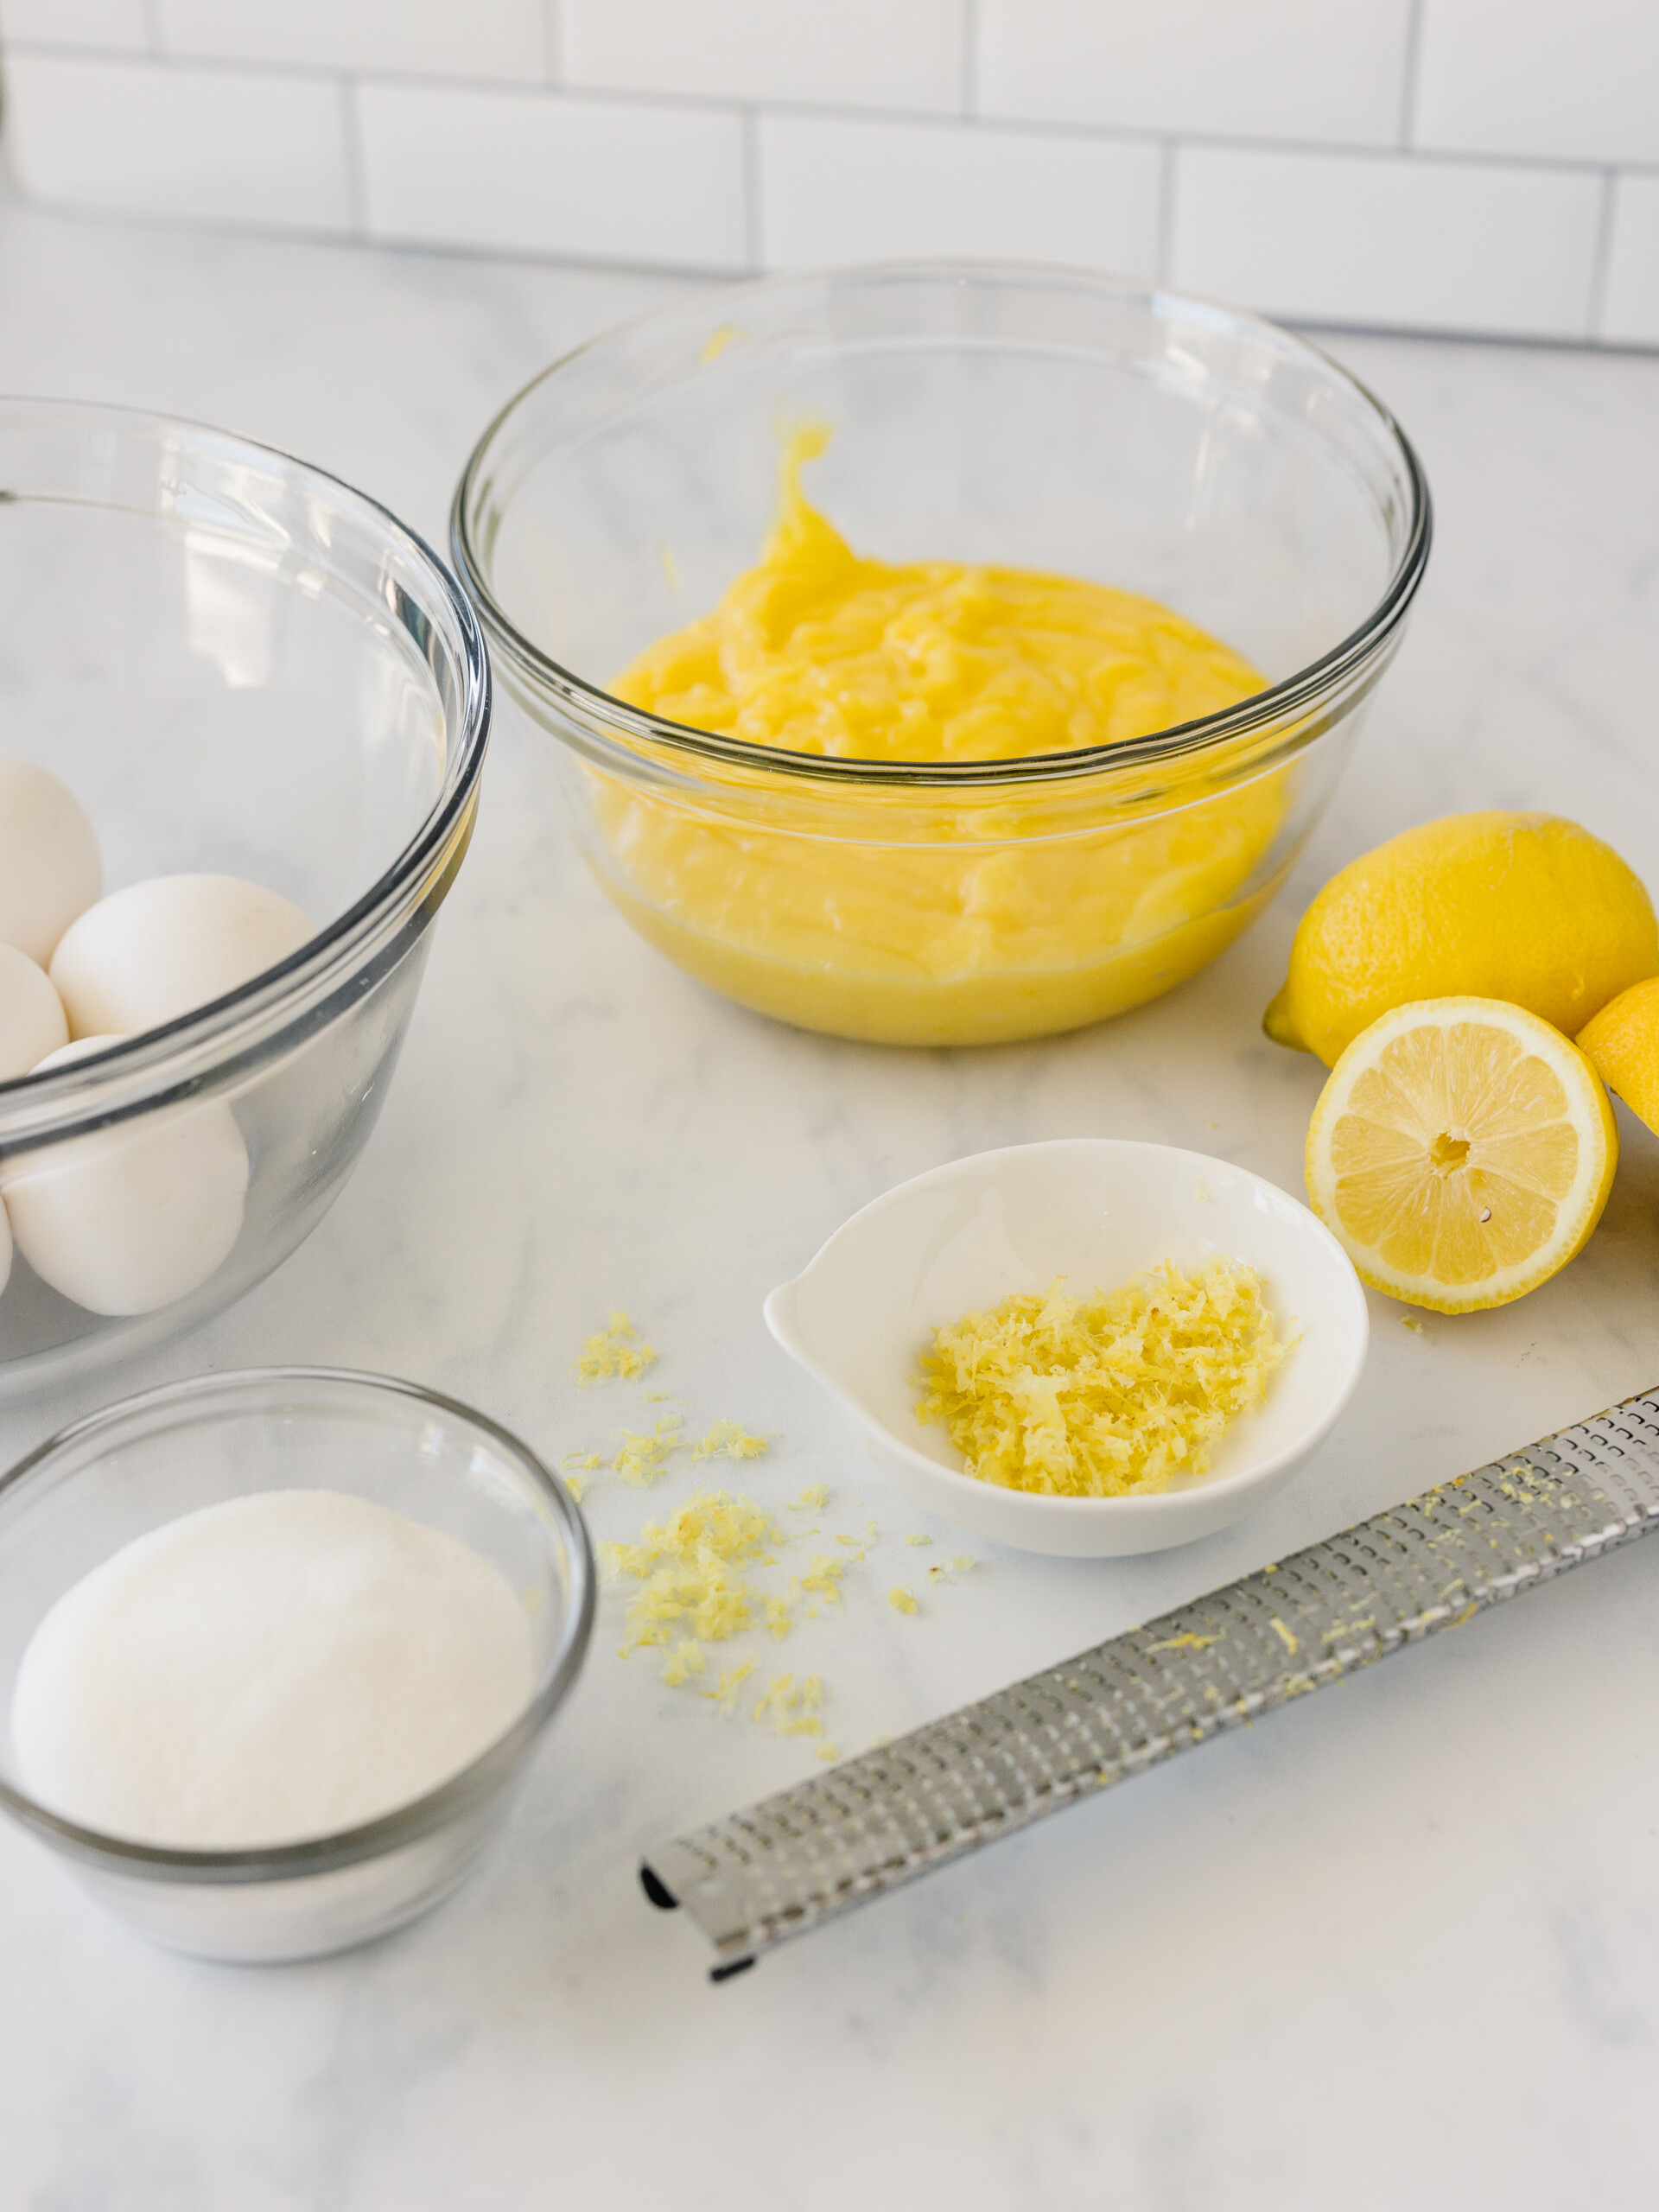 Ingredients to make lemon curd